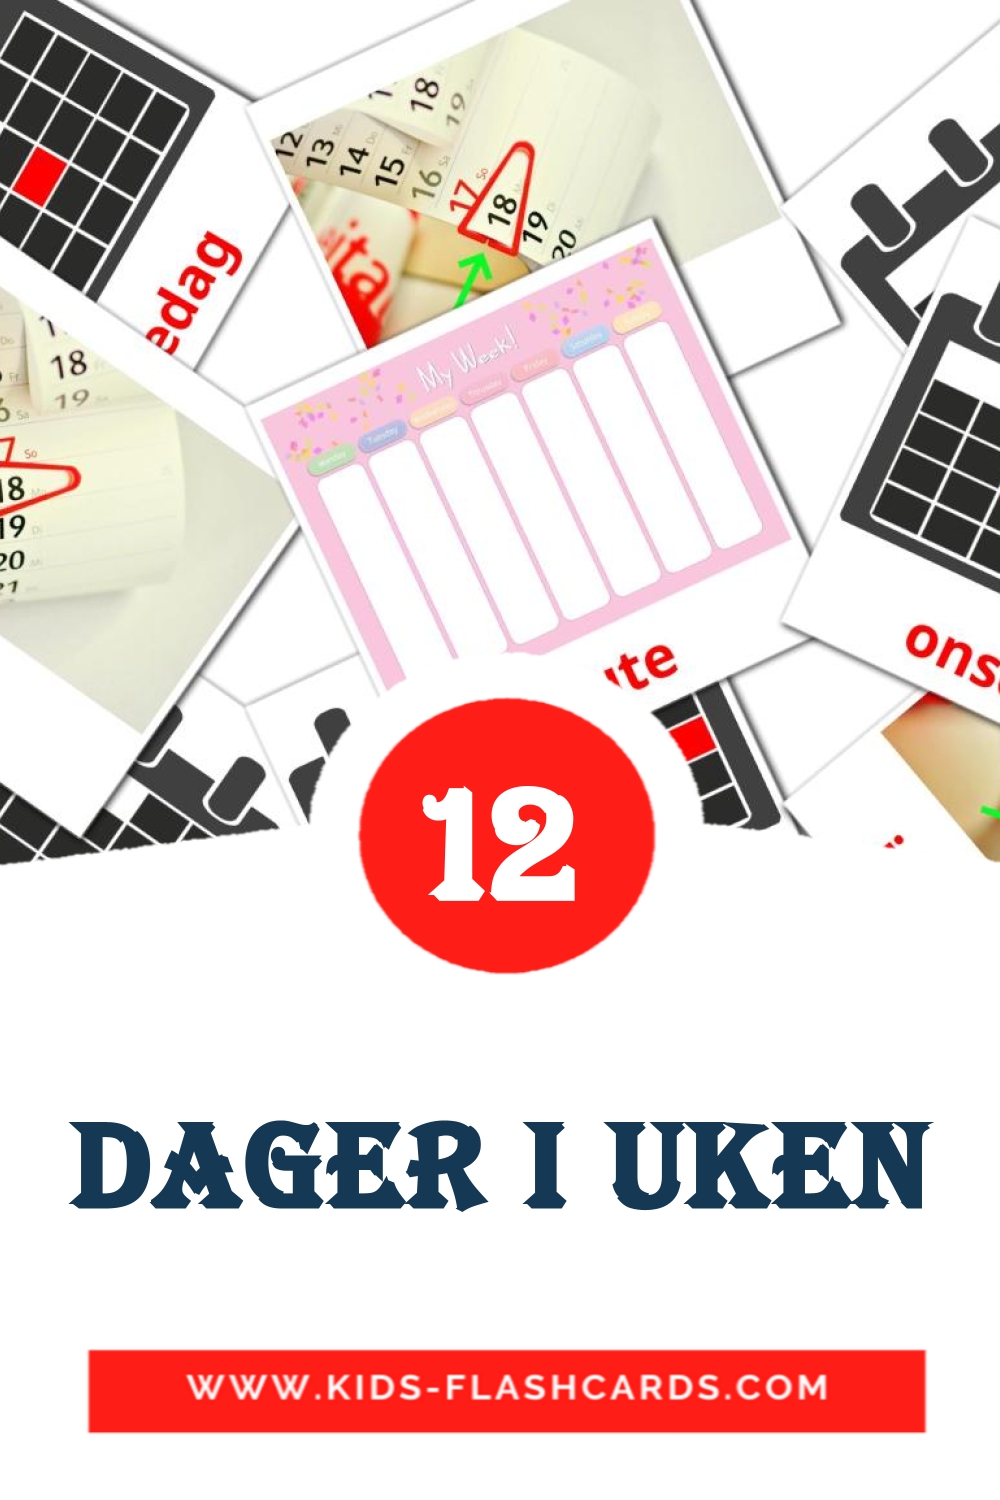 12 tarjetas didacticas de Dager i uken para el jardín de infancia en noruego